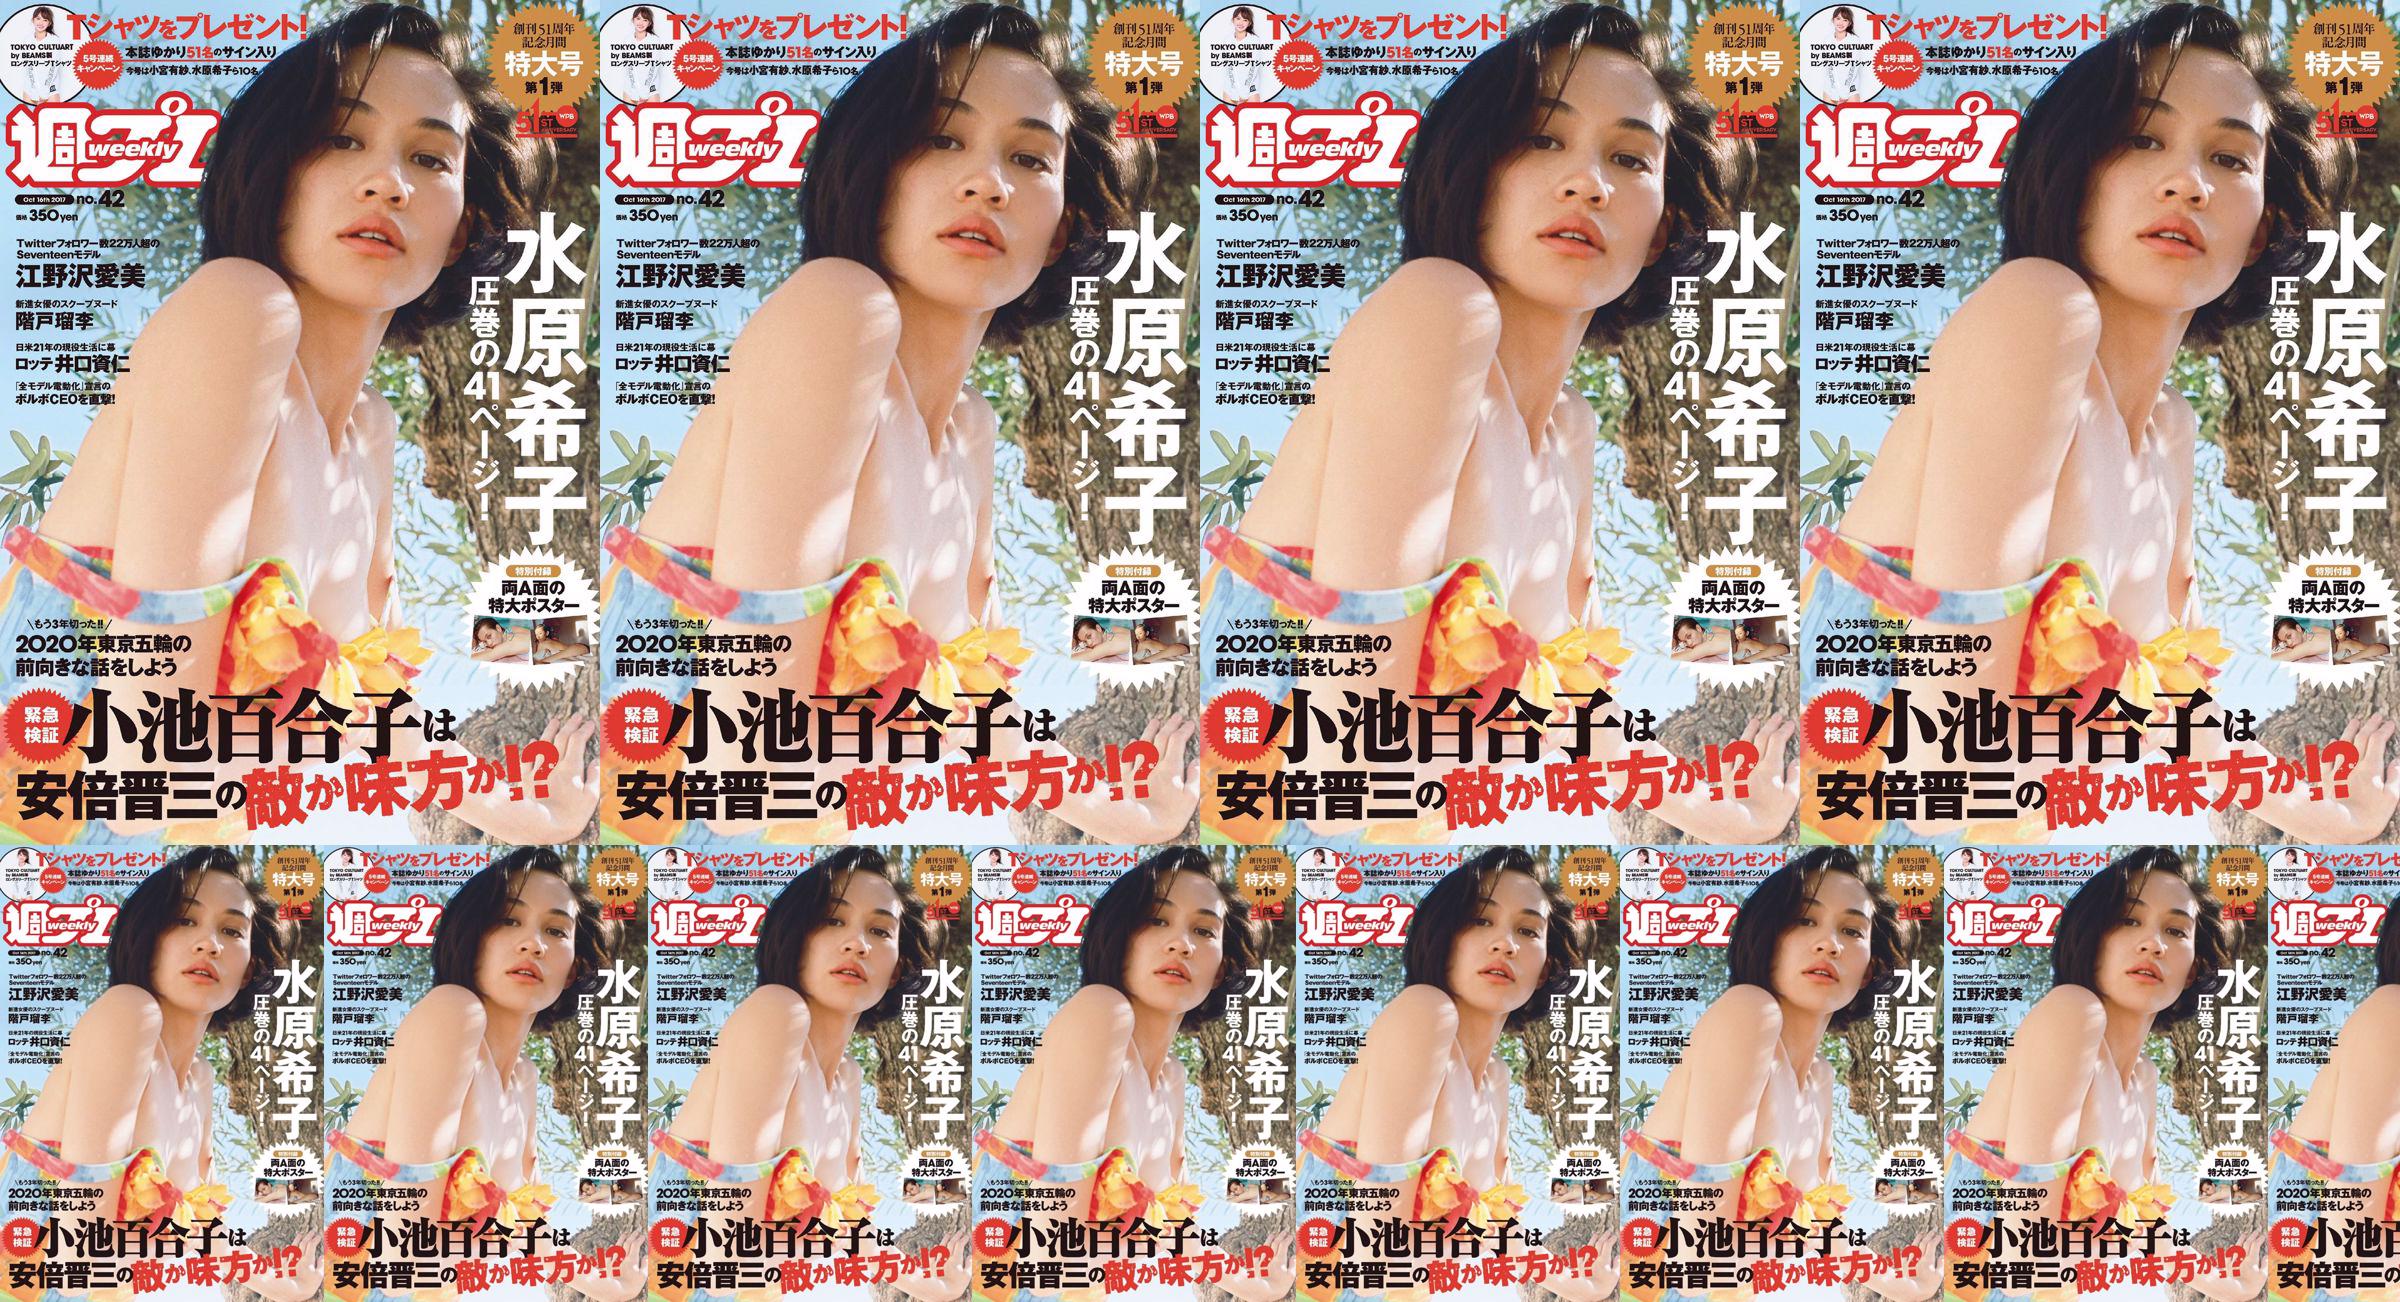 Kiko Mizuhara Manami Enosawa Serina Fukui Miu Nakamura Ruri Shinato [Weekly Playboy] 2017 No.42 Photo Magazine No.eb9ce5 Pagina 1